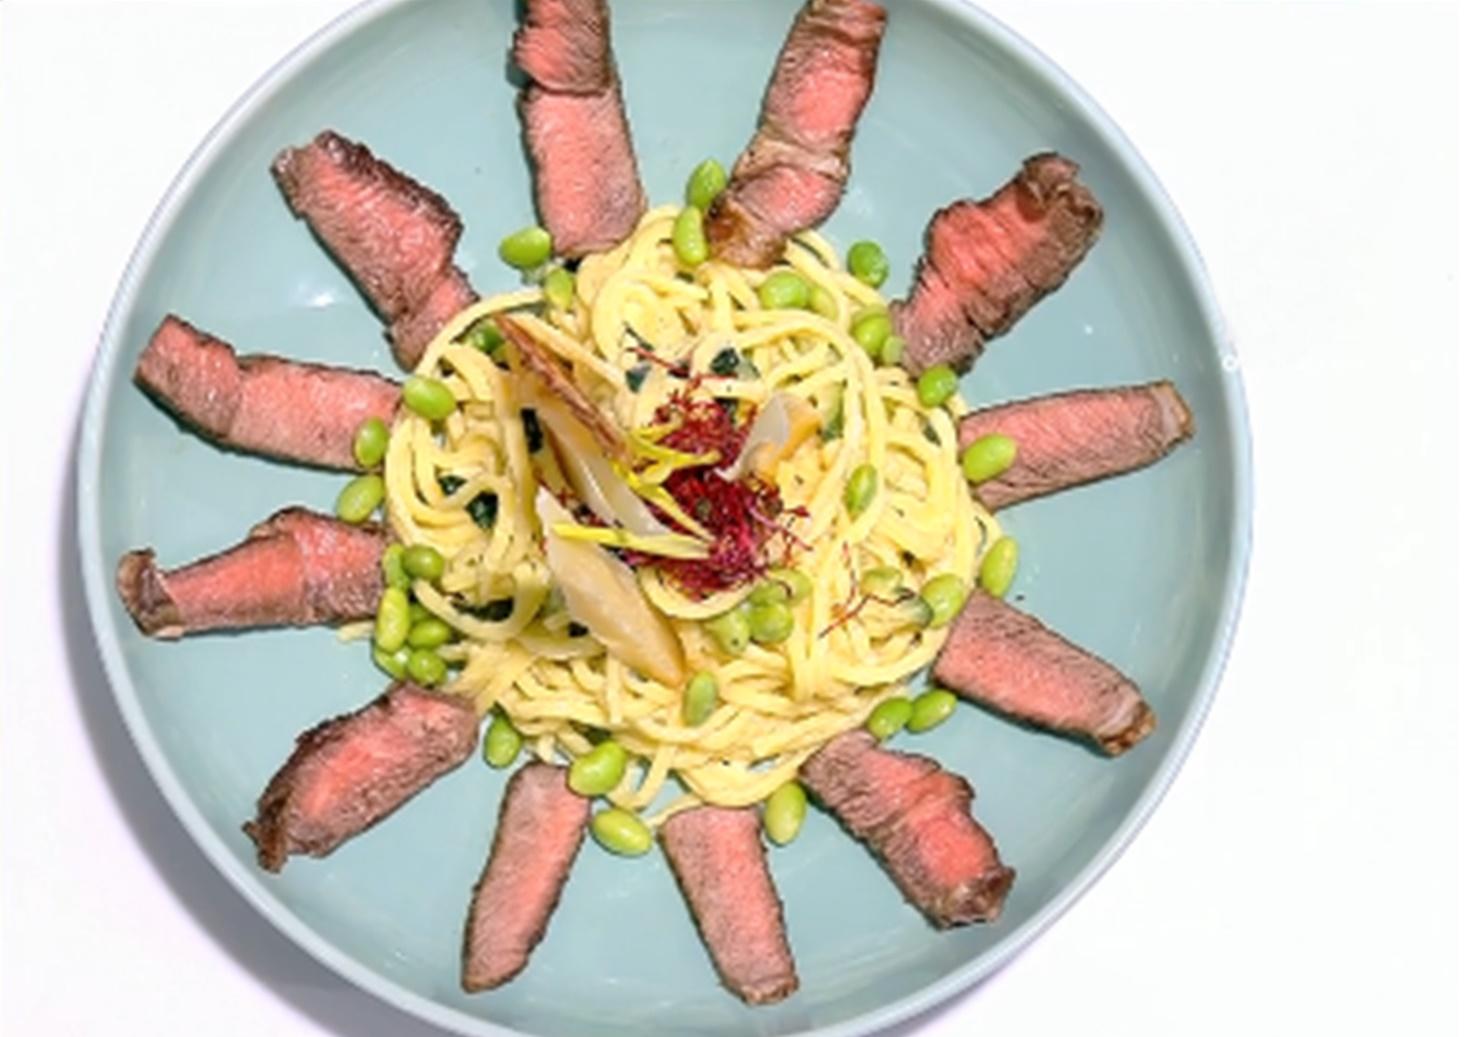 Carnea de vită se feliază subțire și acompaniază spaghetele cu legume la tigaie